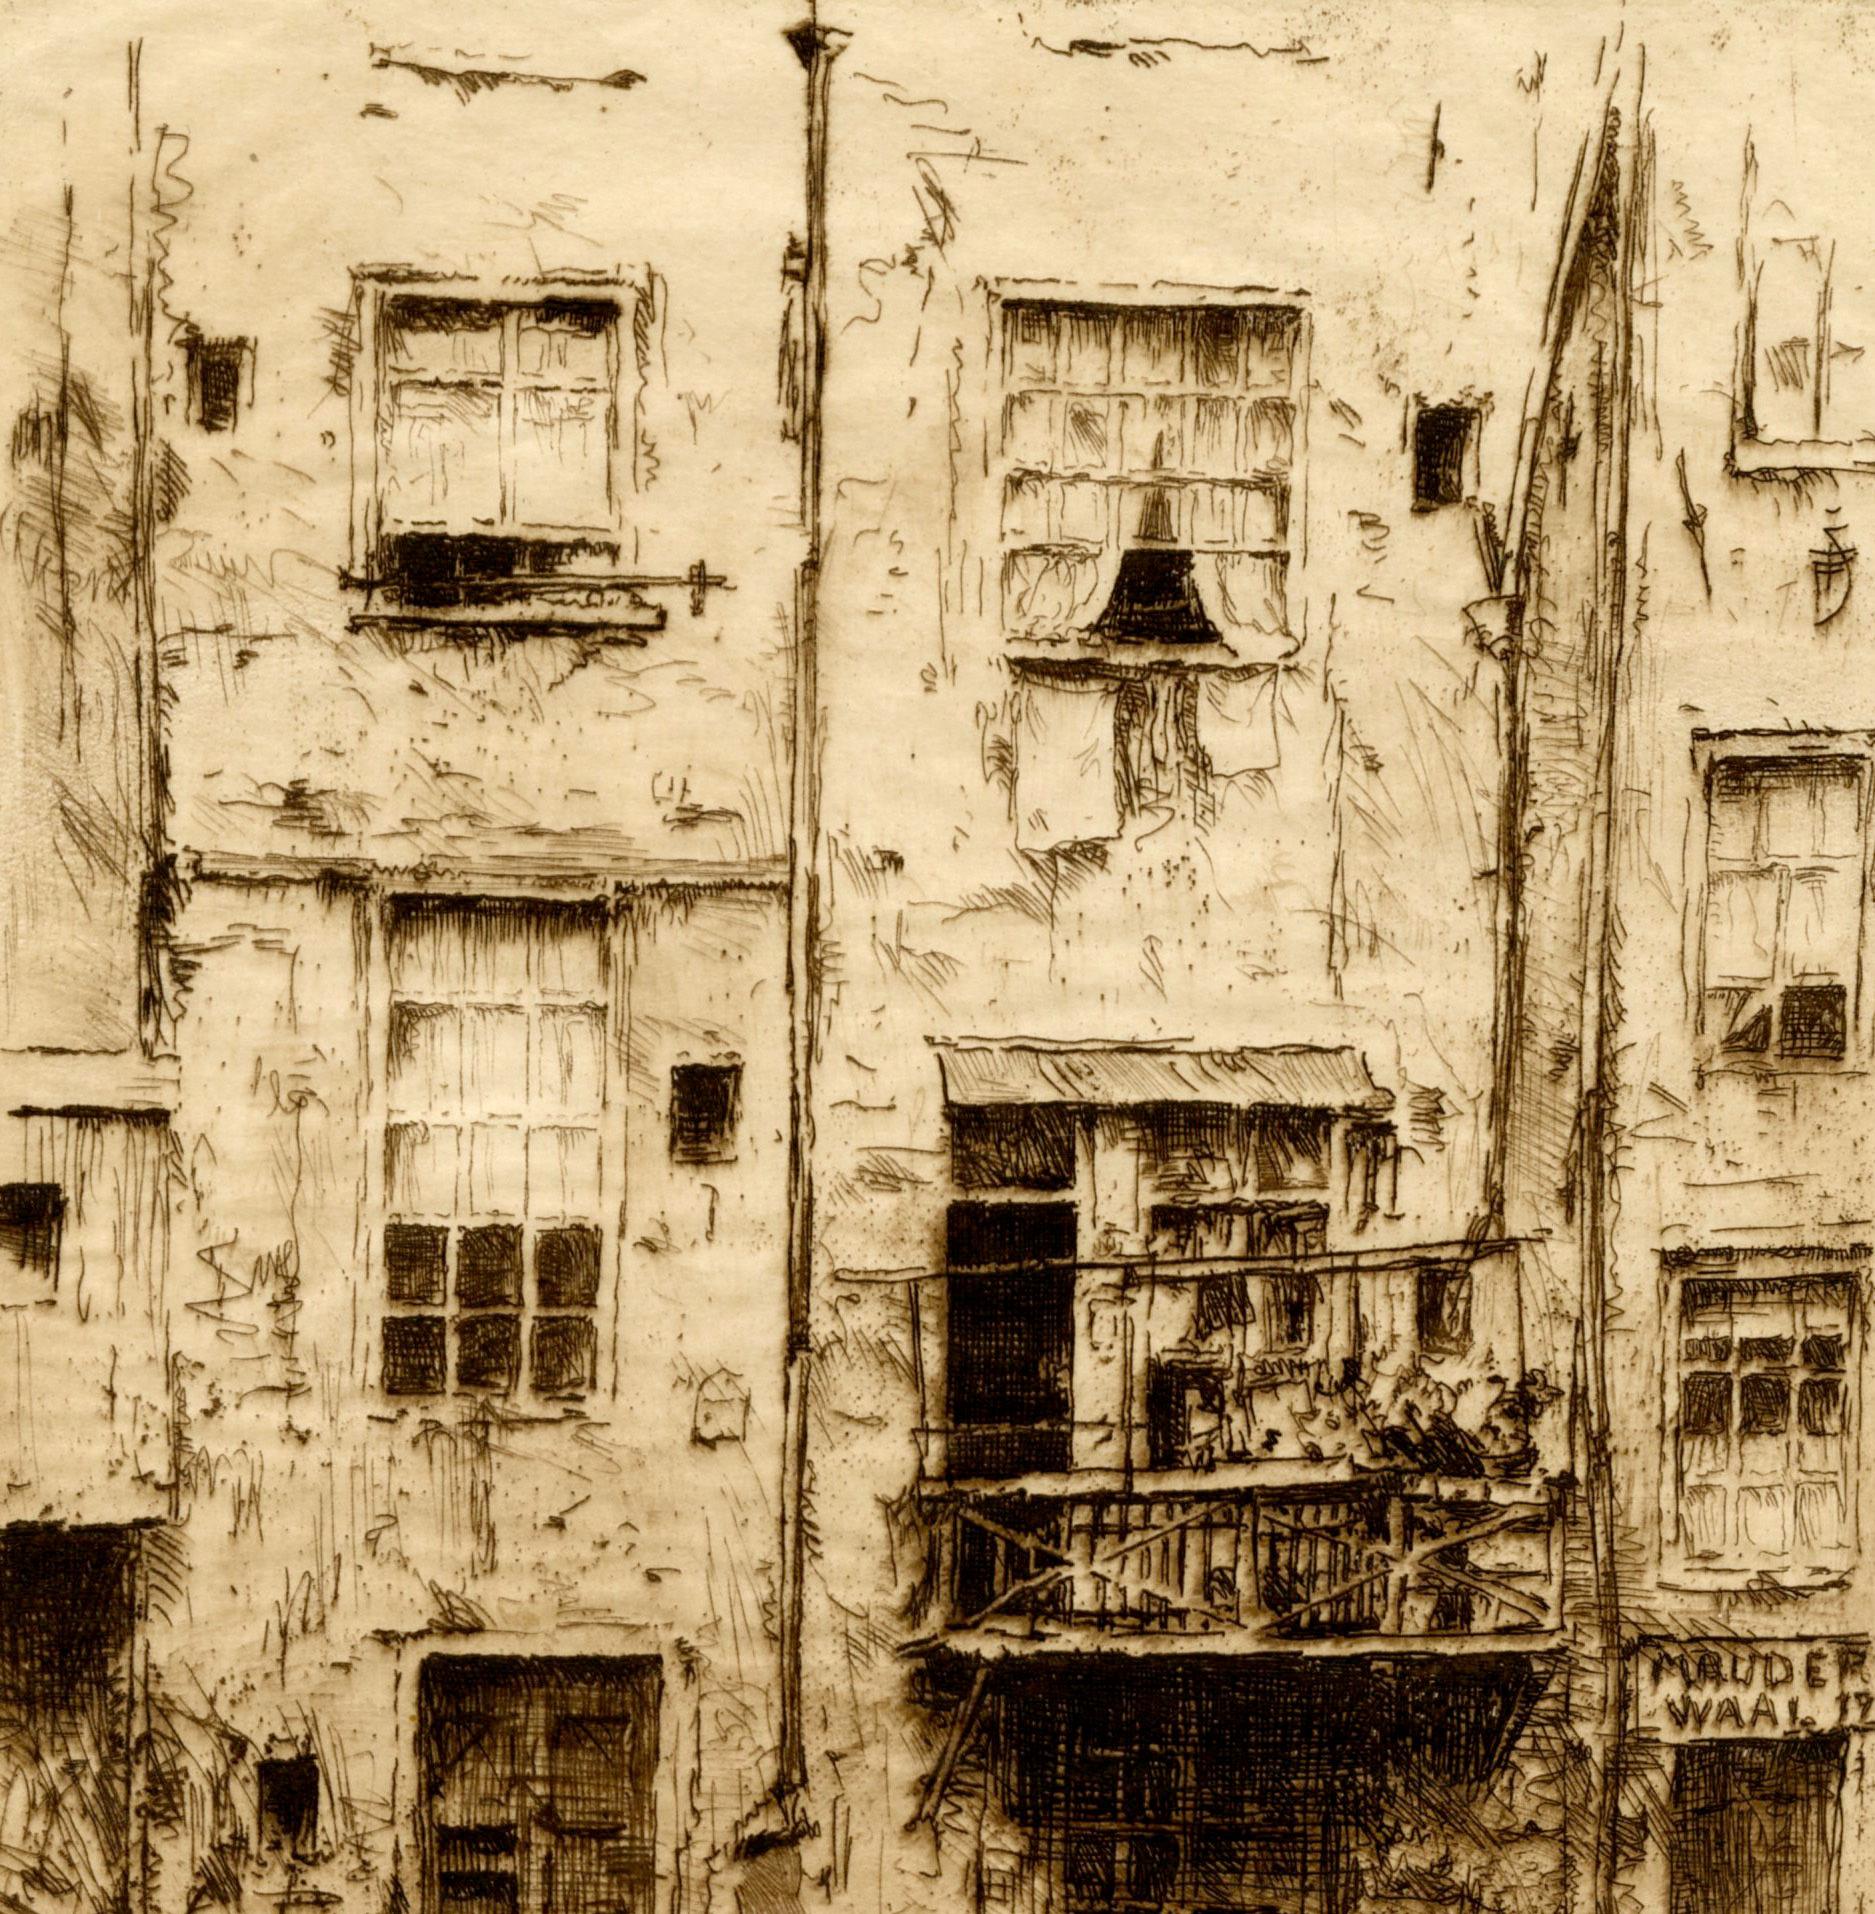 Vieilles maisons d'Amsterdam
Pointe sèche, 1909
Signé et dédicacé au crayon en bas à droite.
